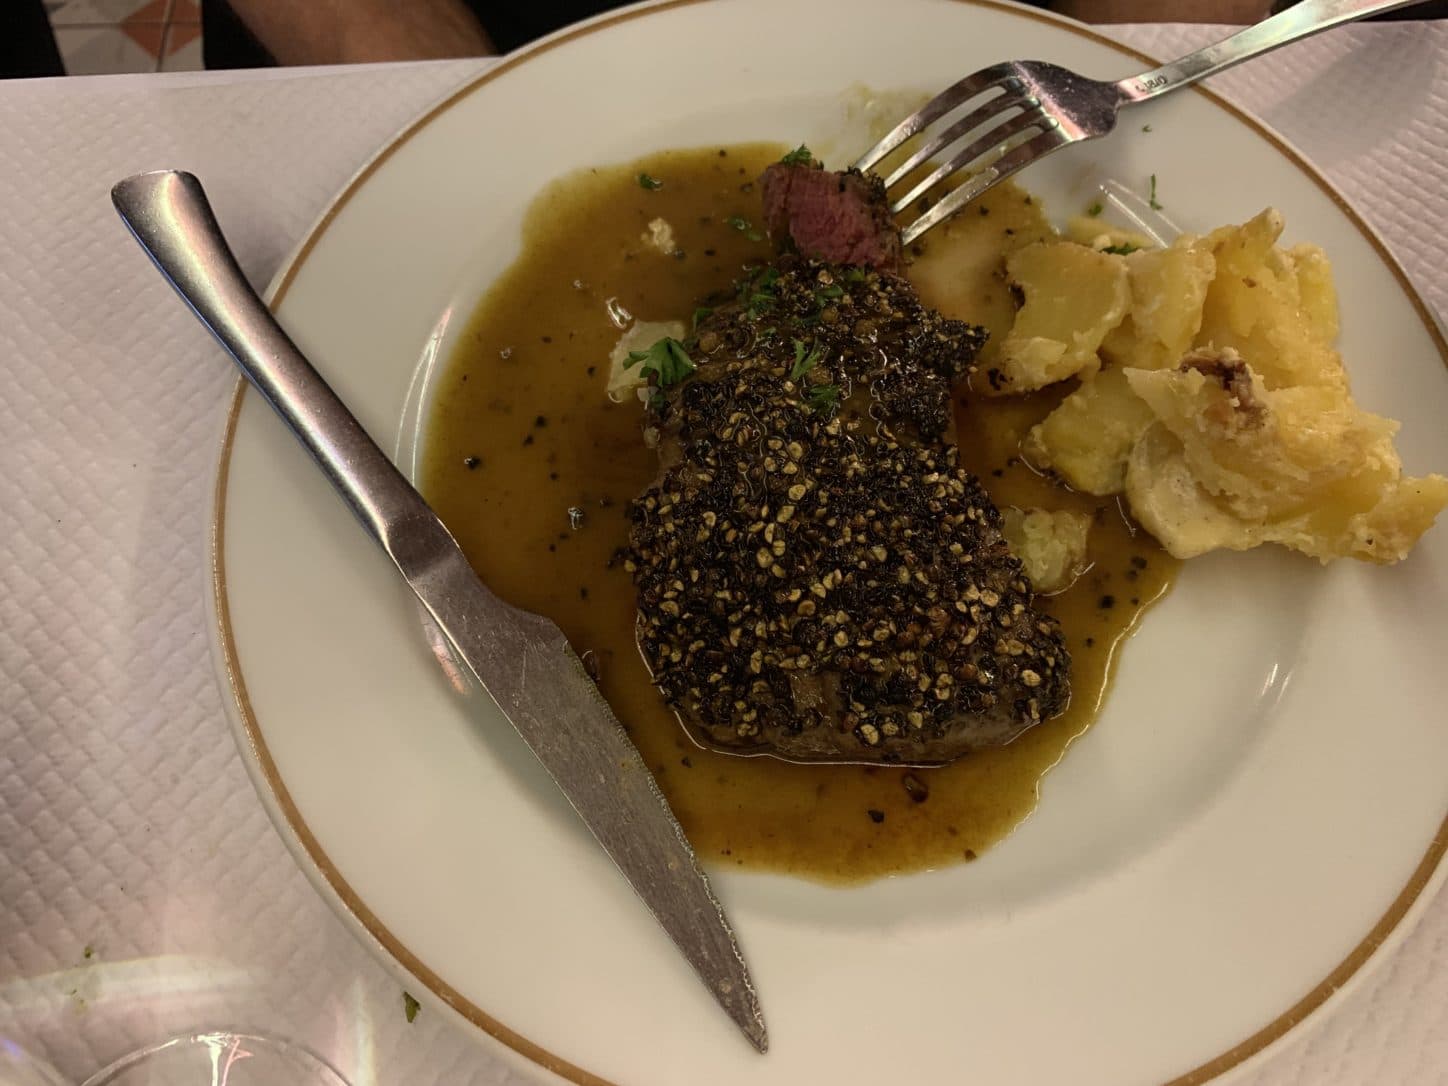 Steak au poivre at Chez Paul, Paris, France